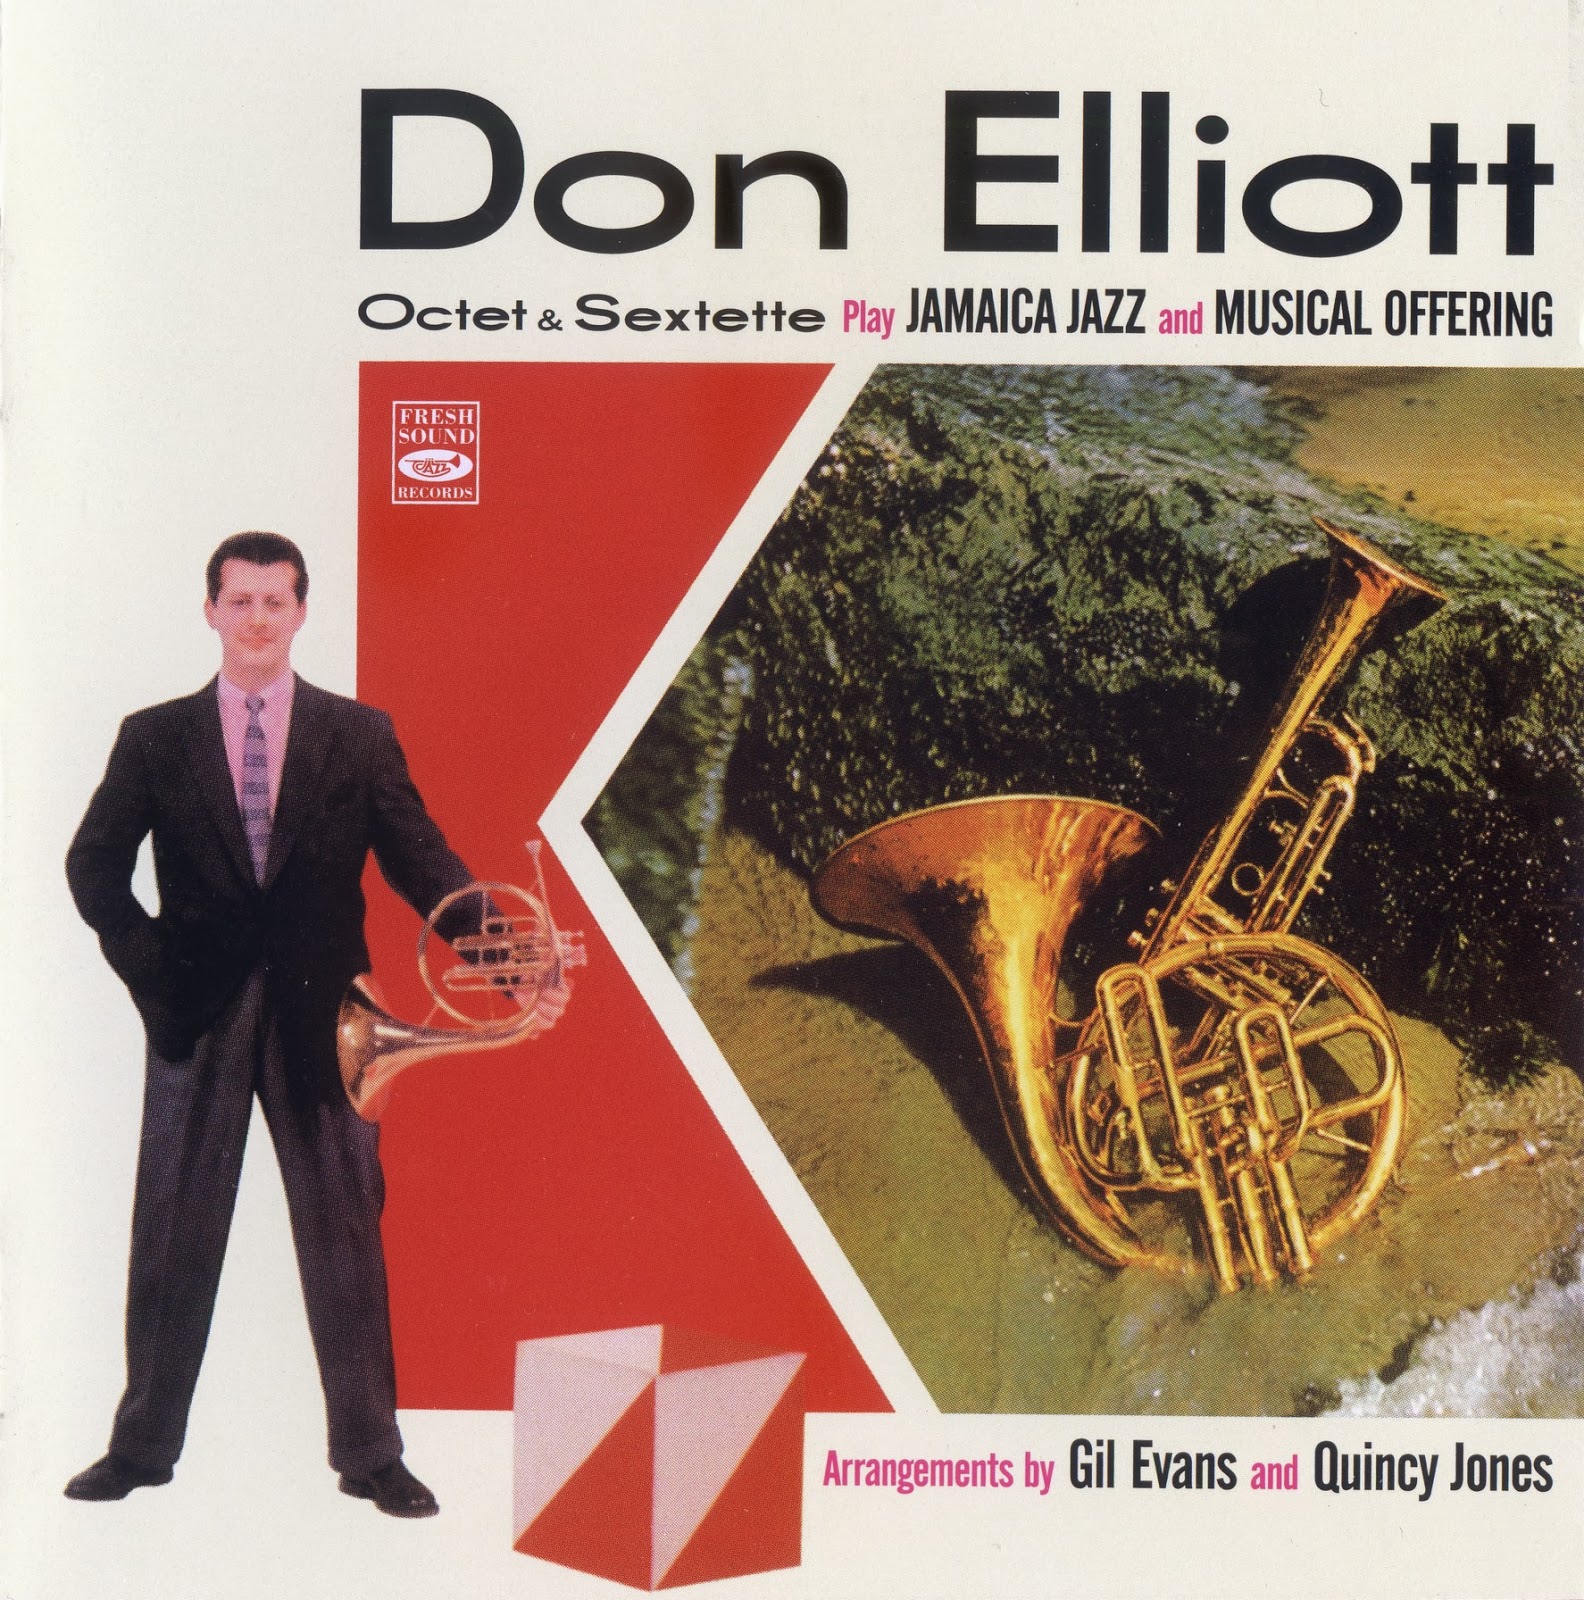 DON ELLIOTT - Don Elliot Octet & Sextette (Jamaica Jazz + Musical Offering) cover 